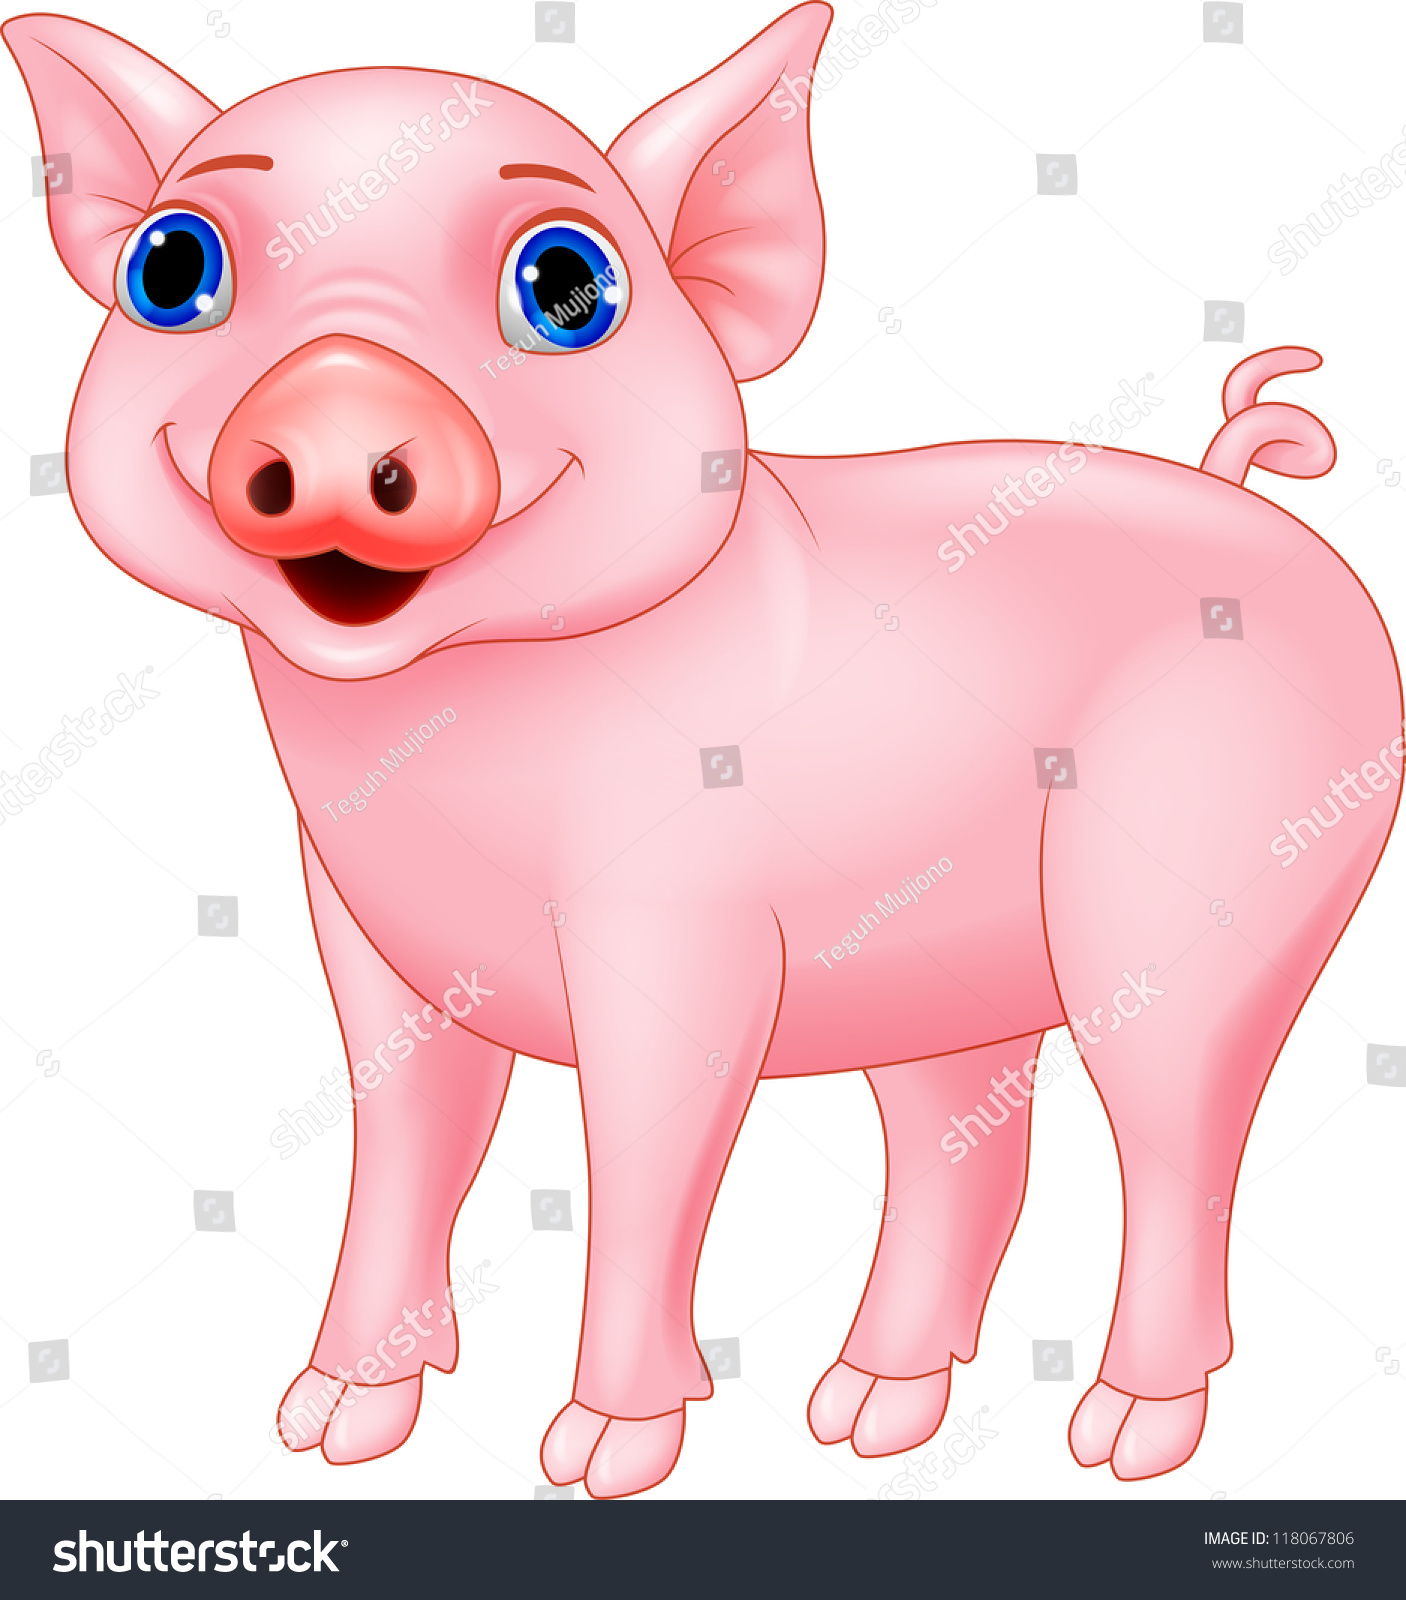 Pig cartoon #118067806